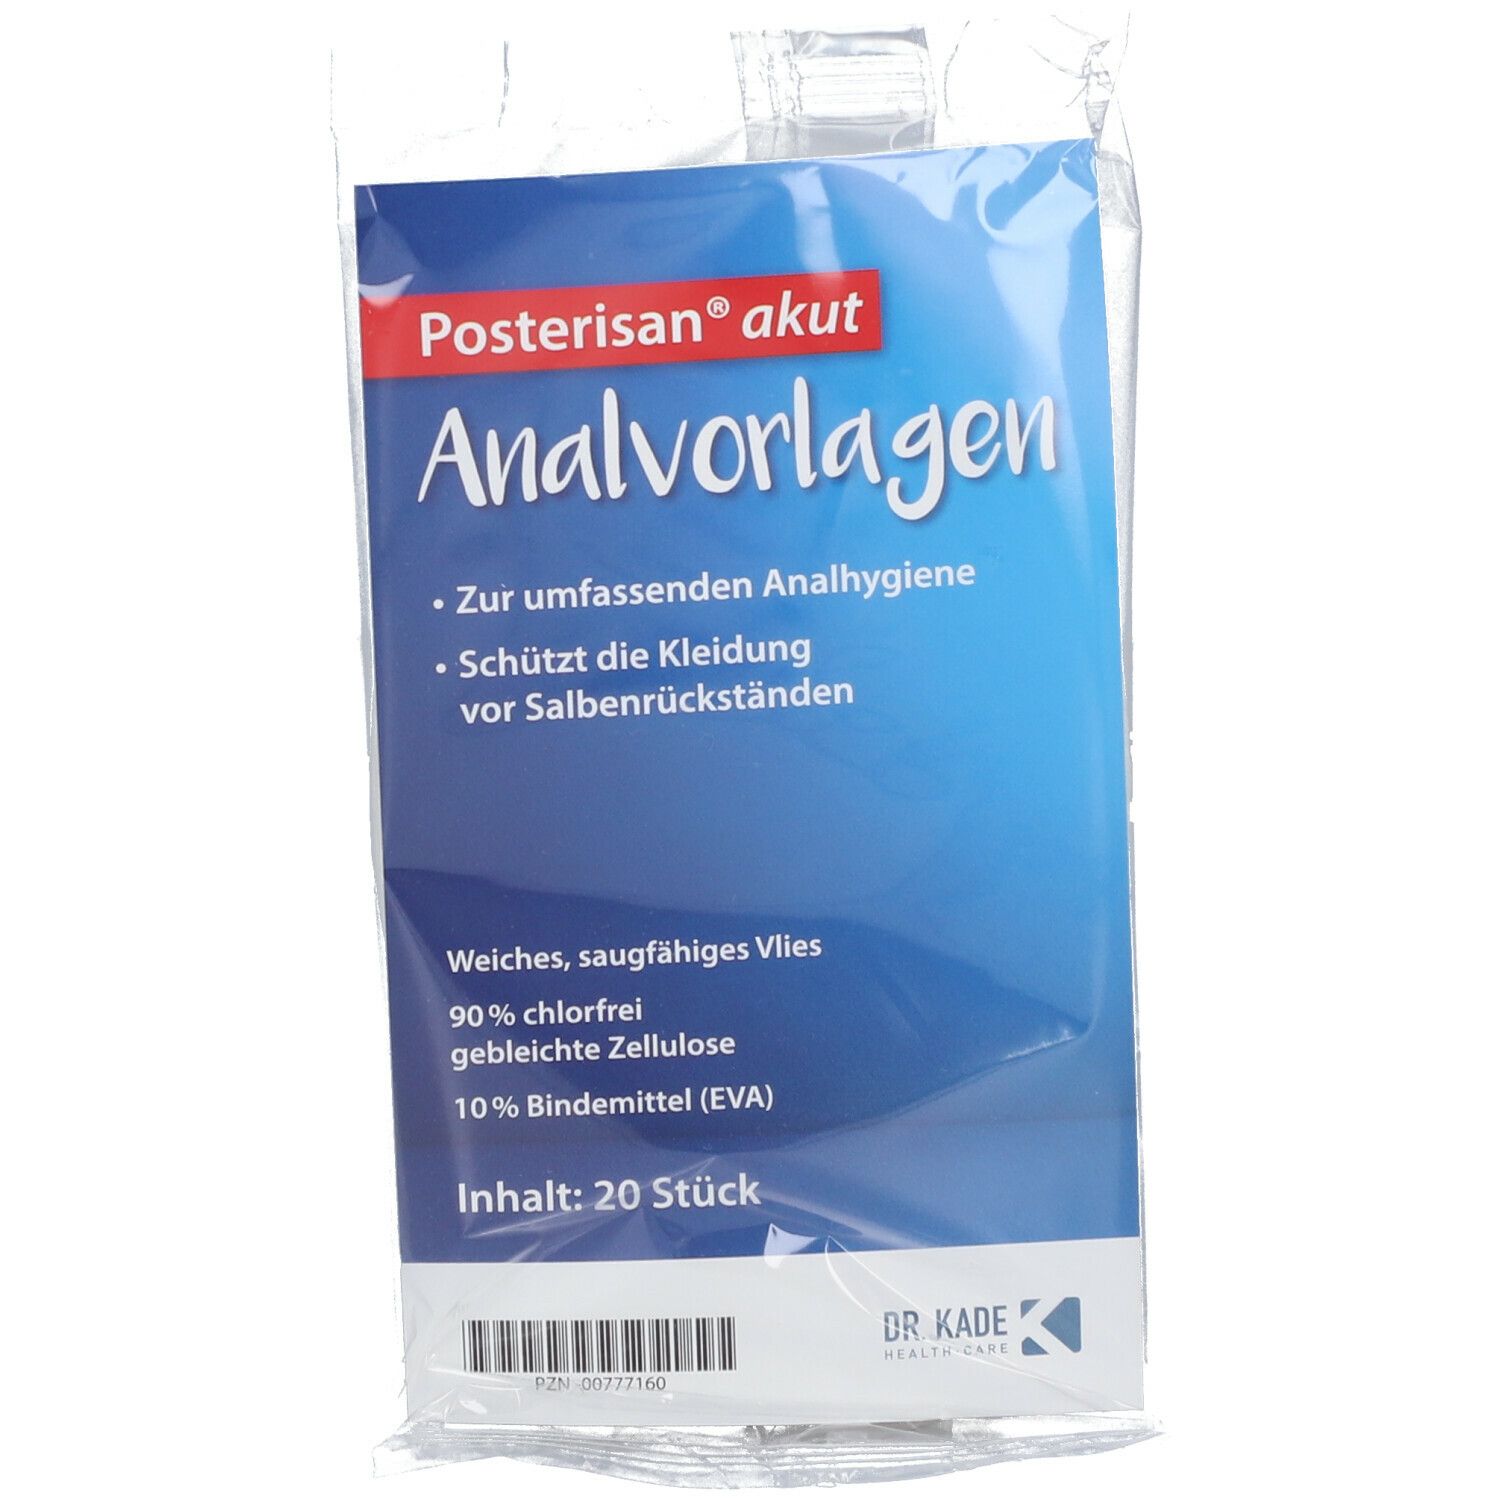 Image of Posterisan® akut Analvorlagen